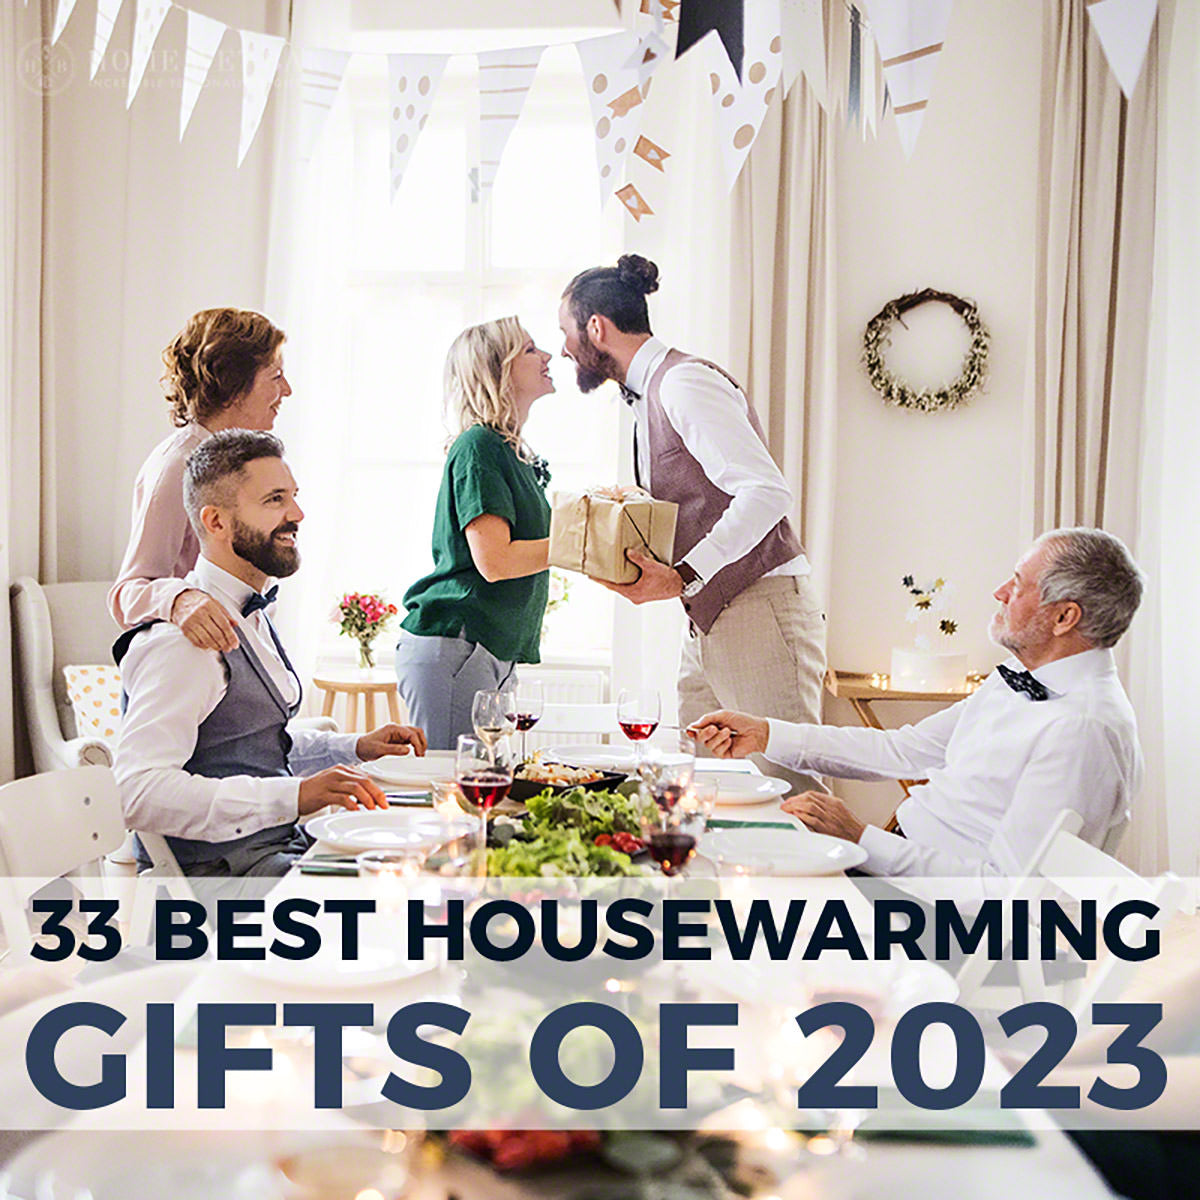 17 Best Housewarming Gifts - PrestigeHaus Blogs